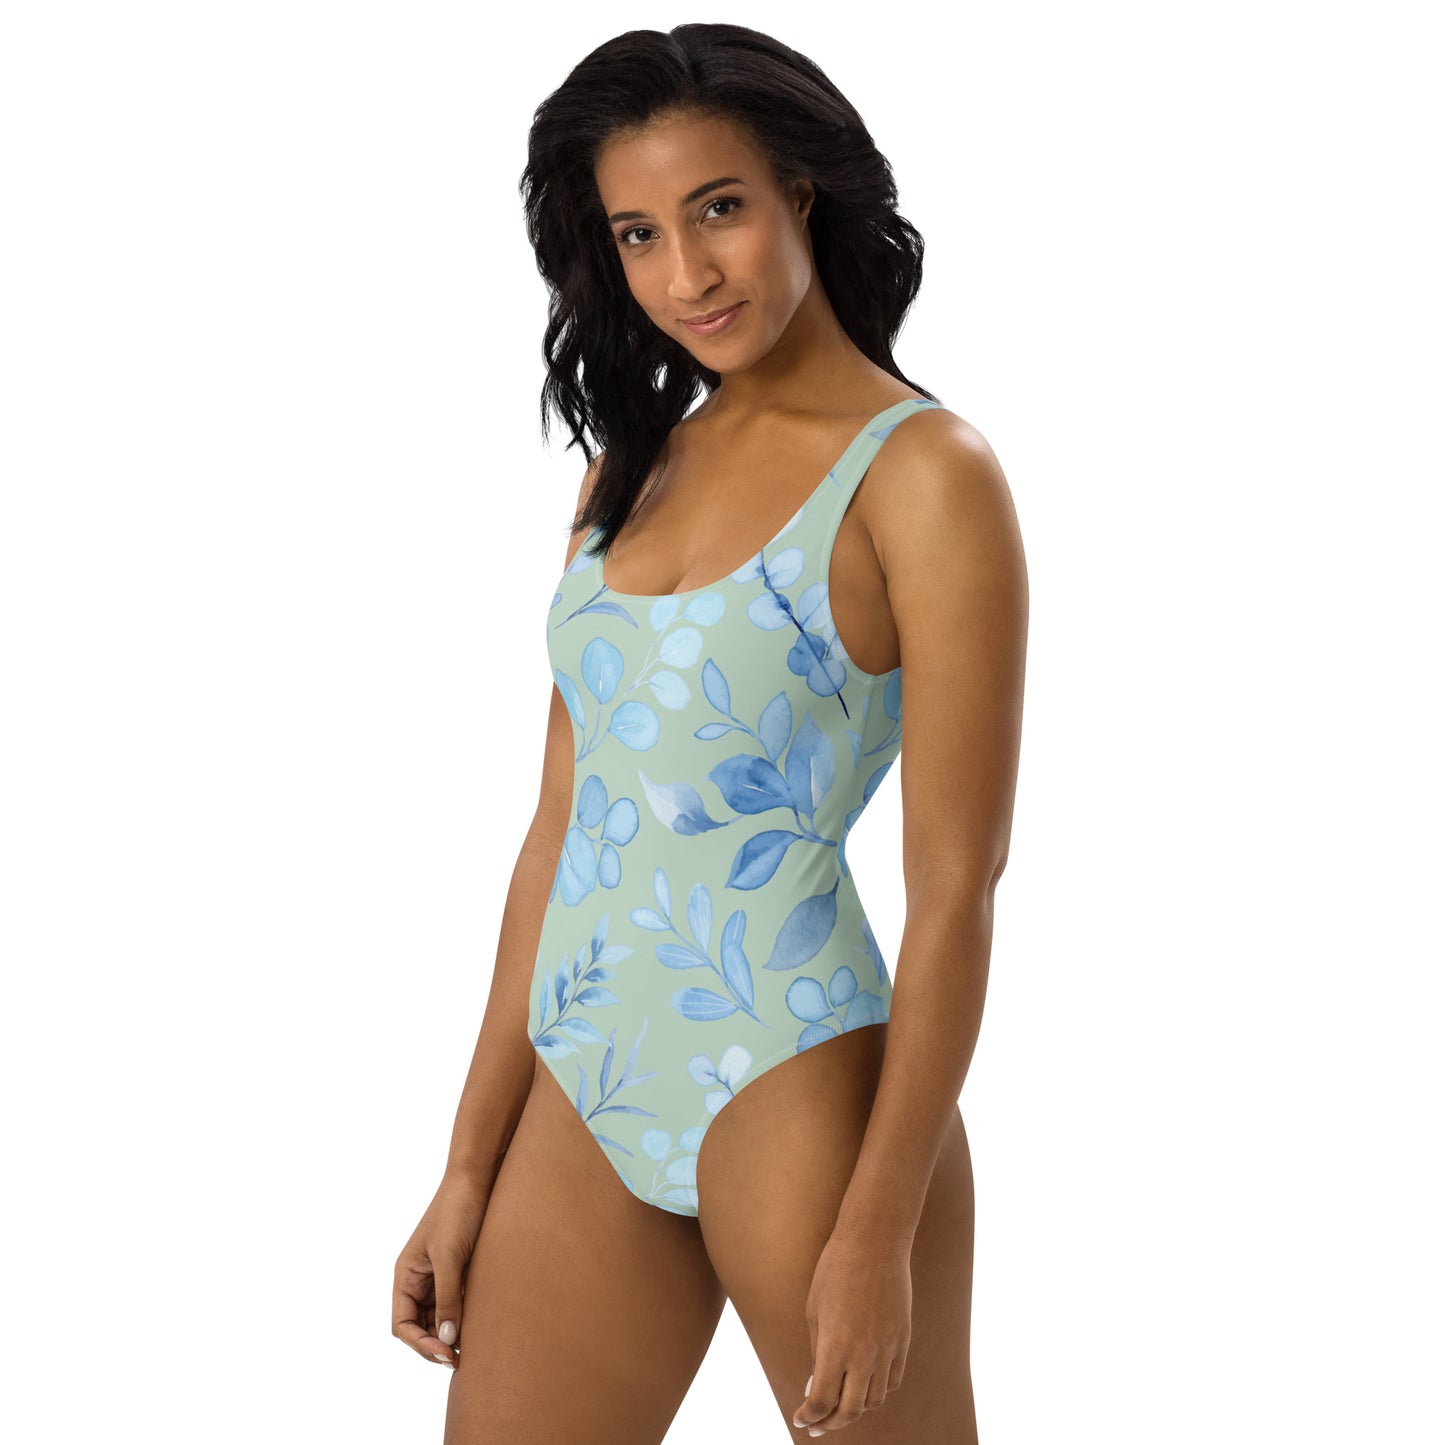 Carpe Diem Gear | Women's Swimsuit | Floral IV | Women's One-Piece Swimsuit UPF 50+